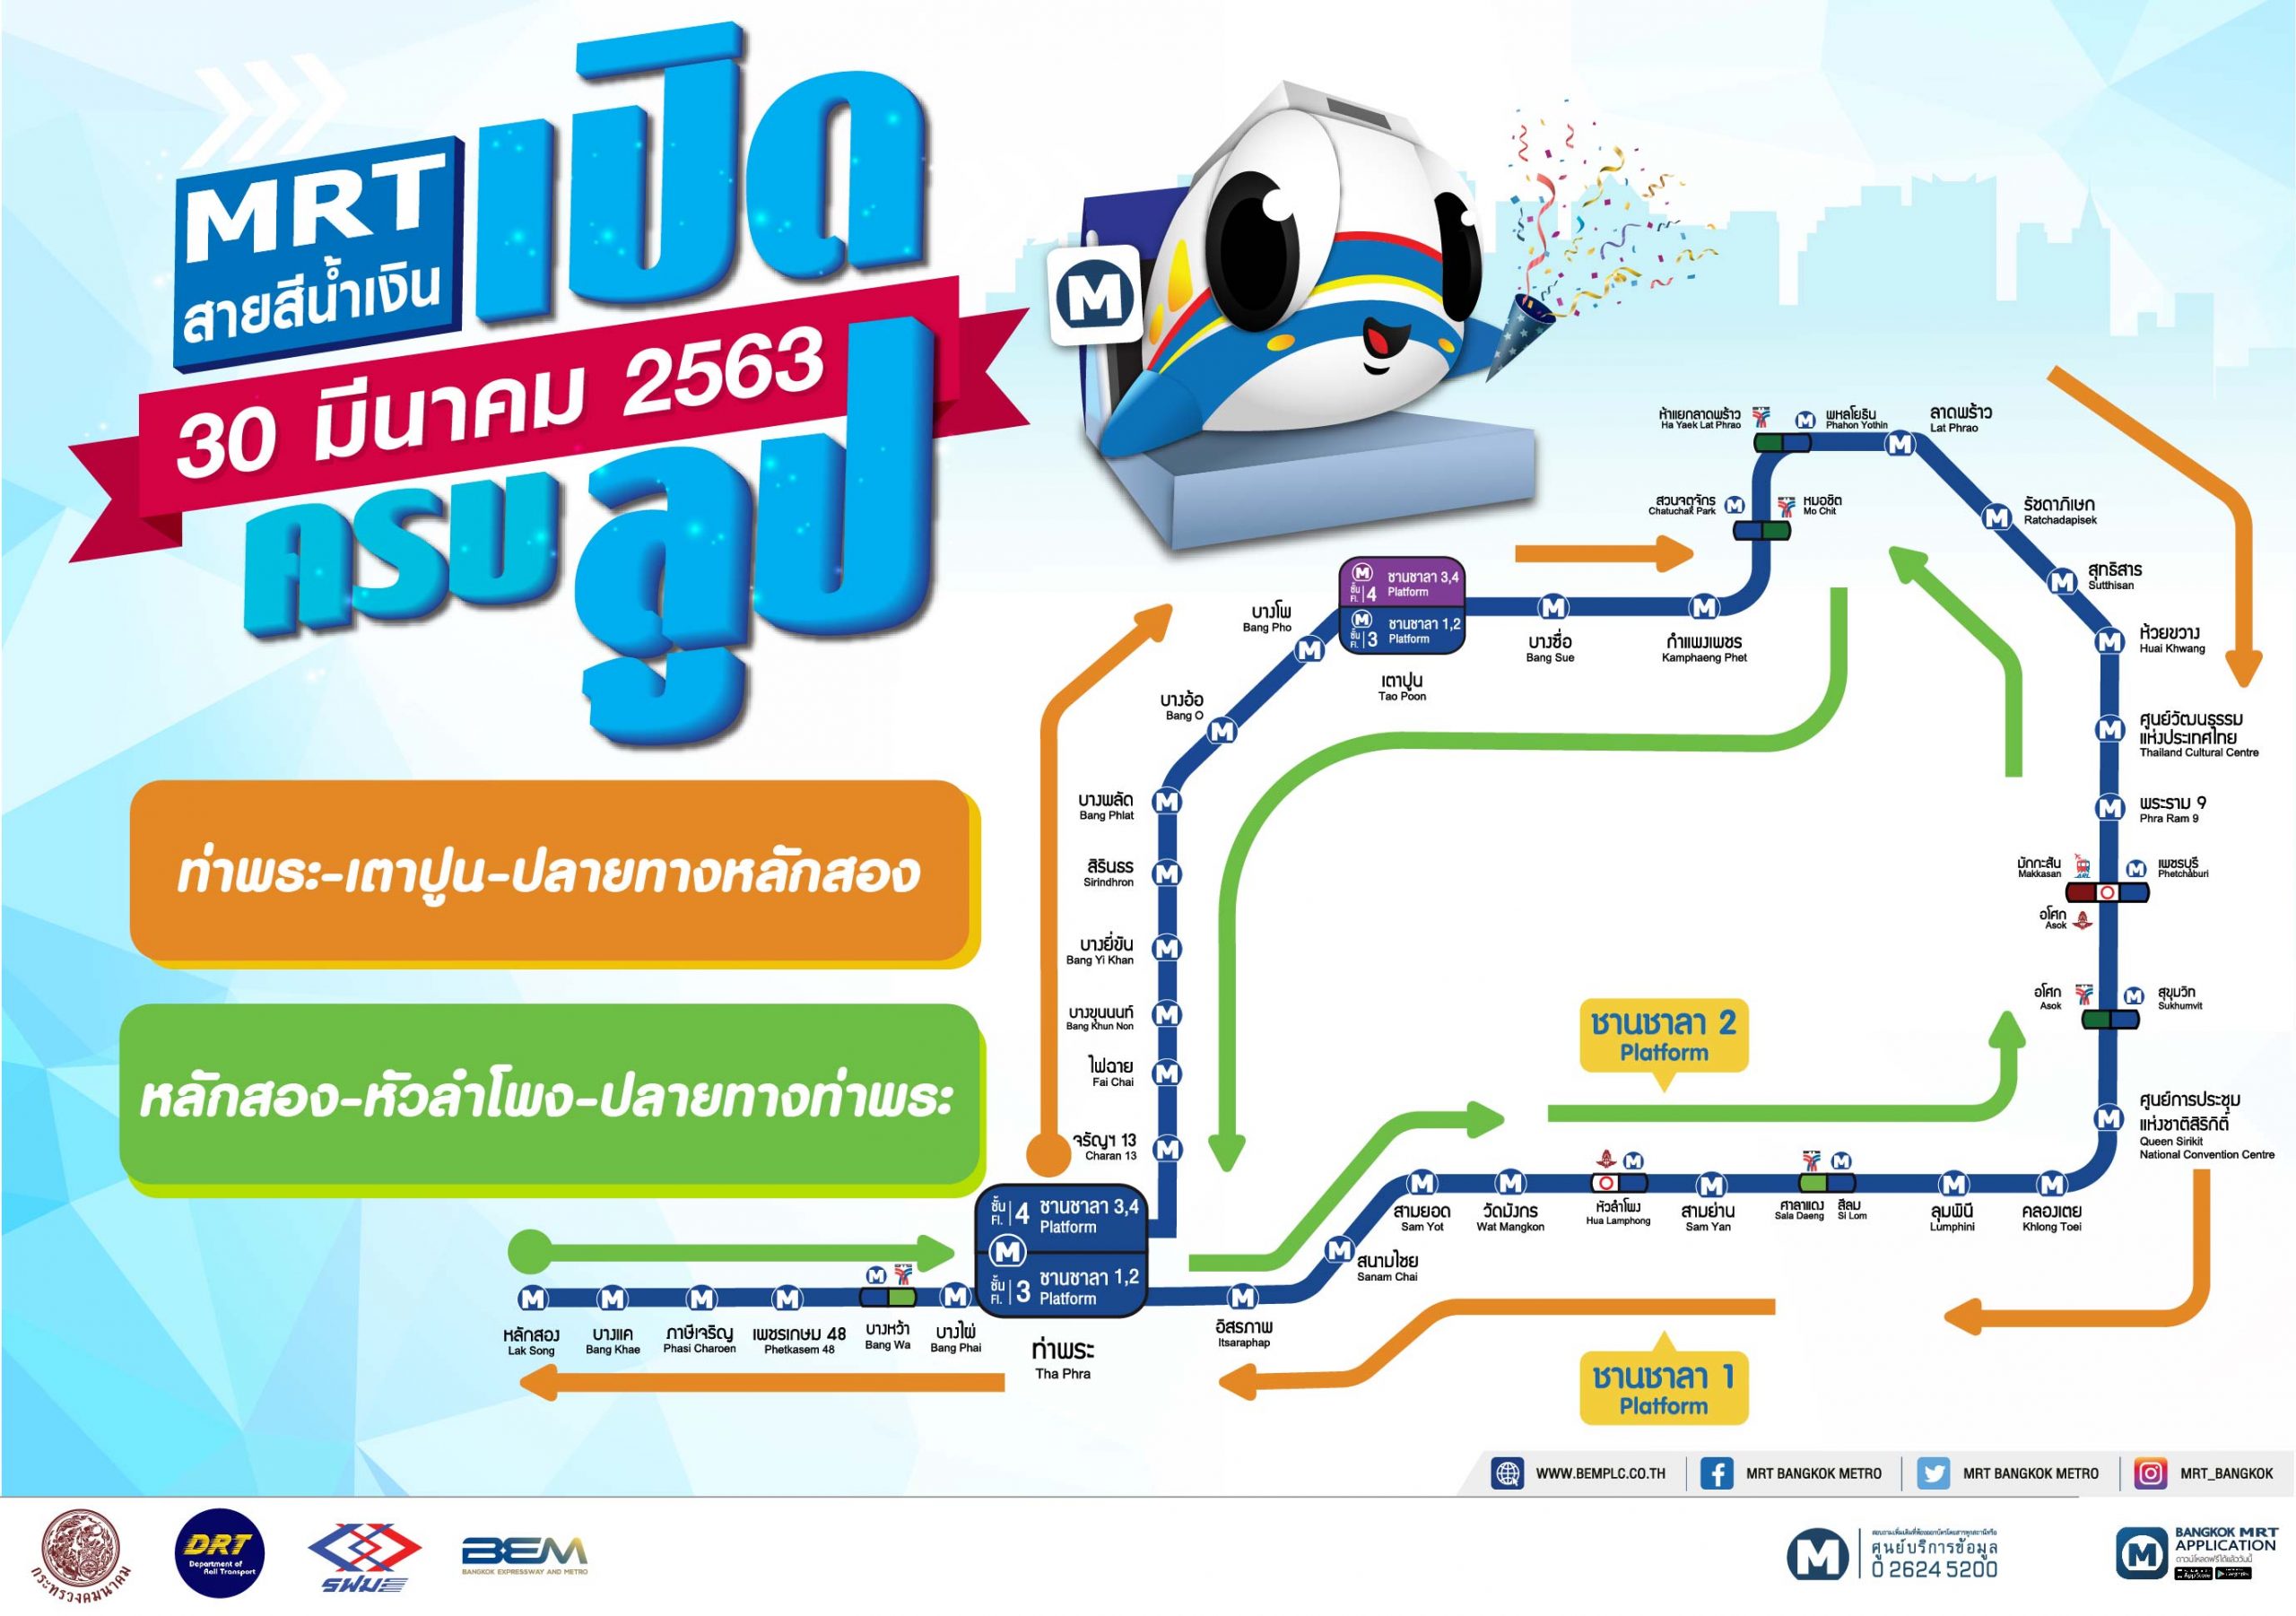 รฟม. และ BEM แนะนำวิธีการเดินทางด้วยรถไฟฟ้า MRT สายสีน้ำเงิน และสายสีม่วง แบบครบลูป ตั้งแต่วันที่ 30 มีนาคม 2563 นี้ เป็นต้นไป